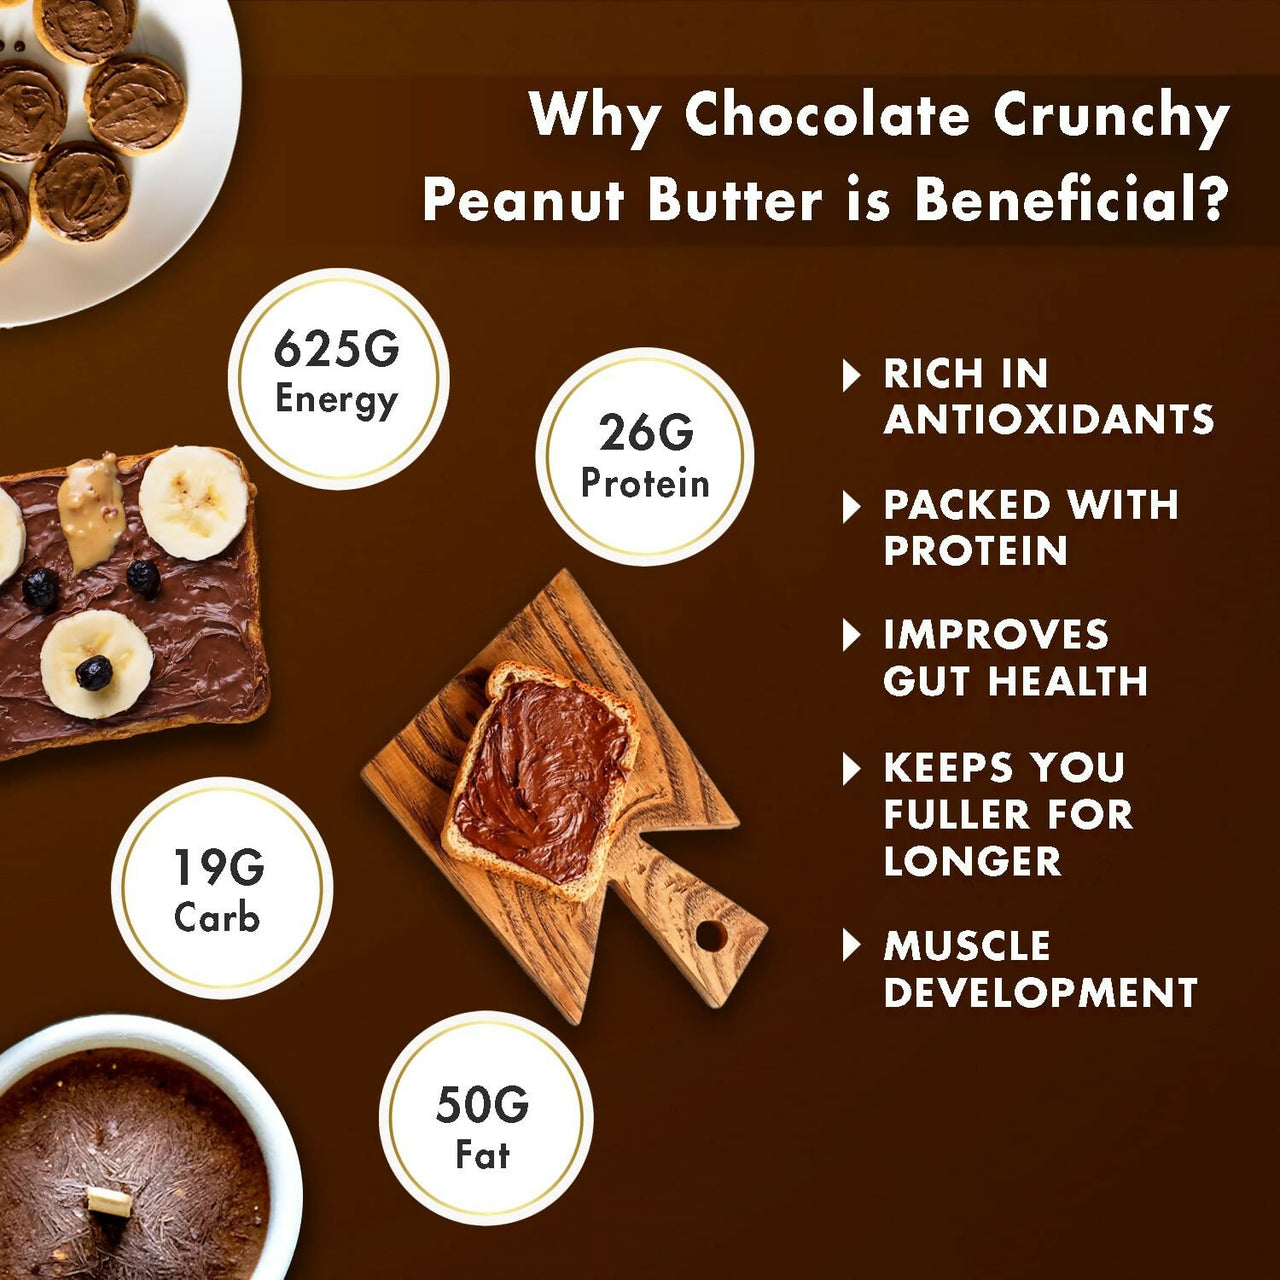 Sorich Organics Peanut Butter Chocolate Flavour Crunchy - Distacart